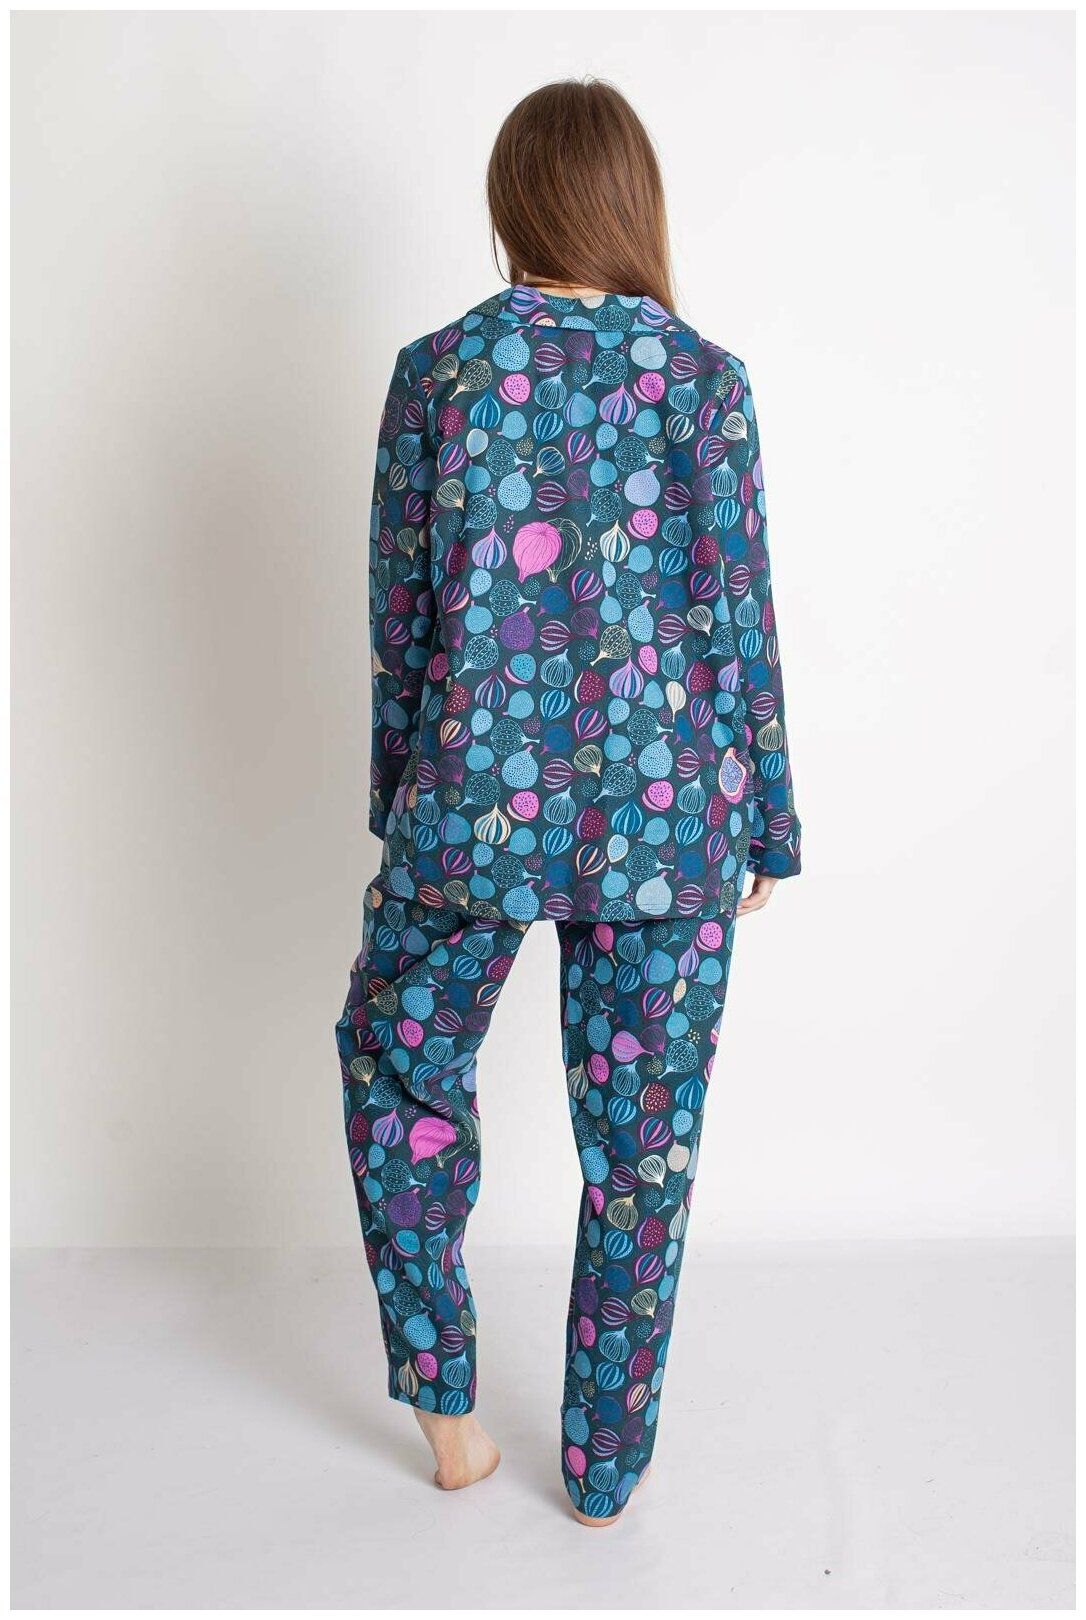 Женская пижама с брюками Серафима Изумрудный размер 54 Трикотаж Лика Дресс рубашка на 4 пуговицы с отложным воротником брюки прямого покроя с поясной - фотография № 6